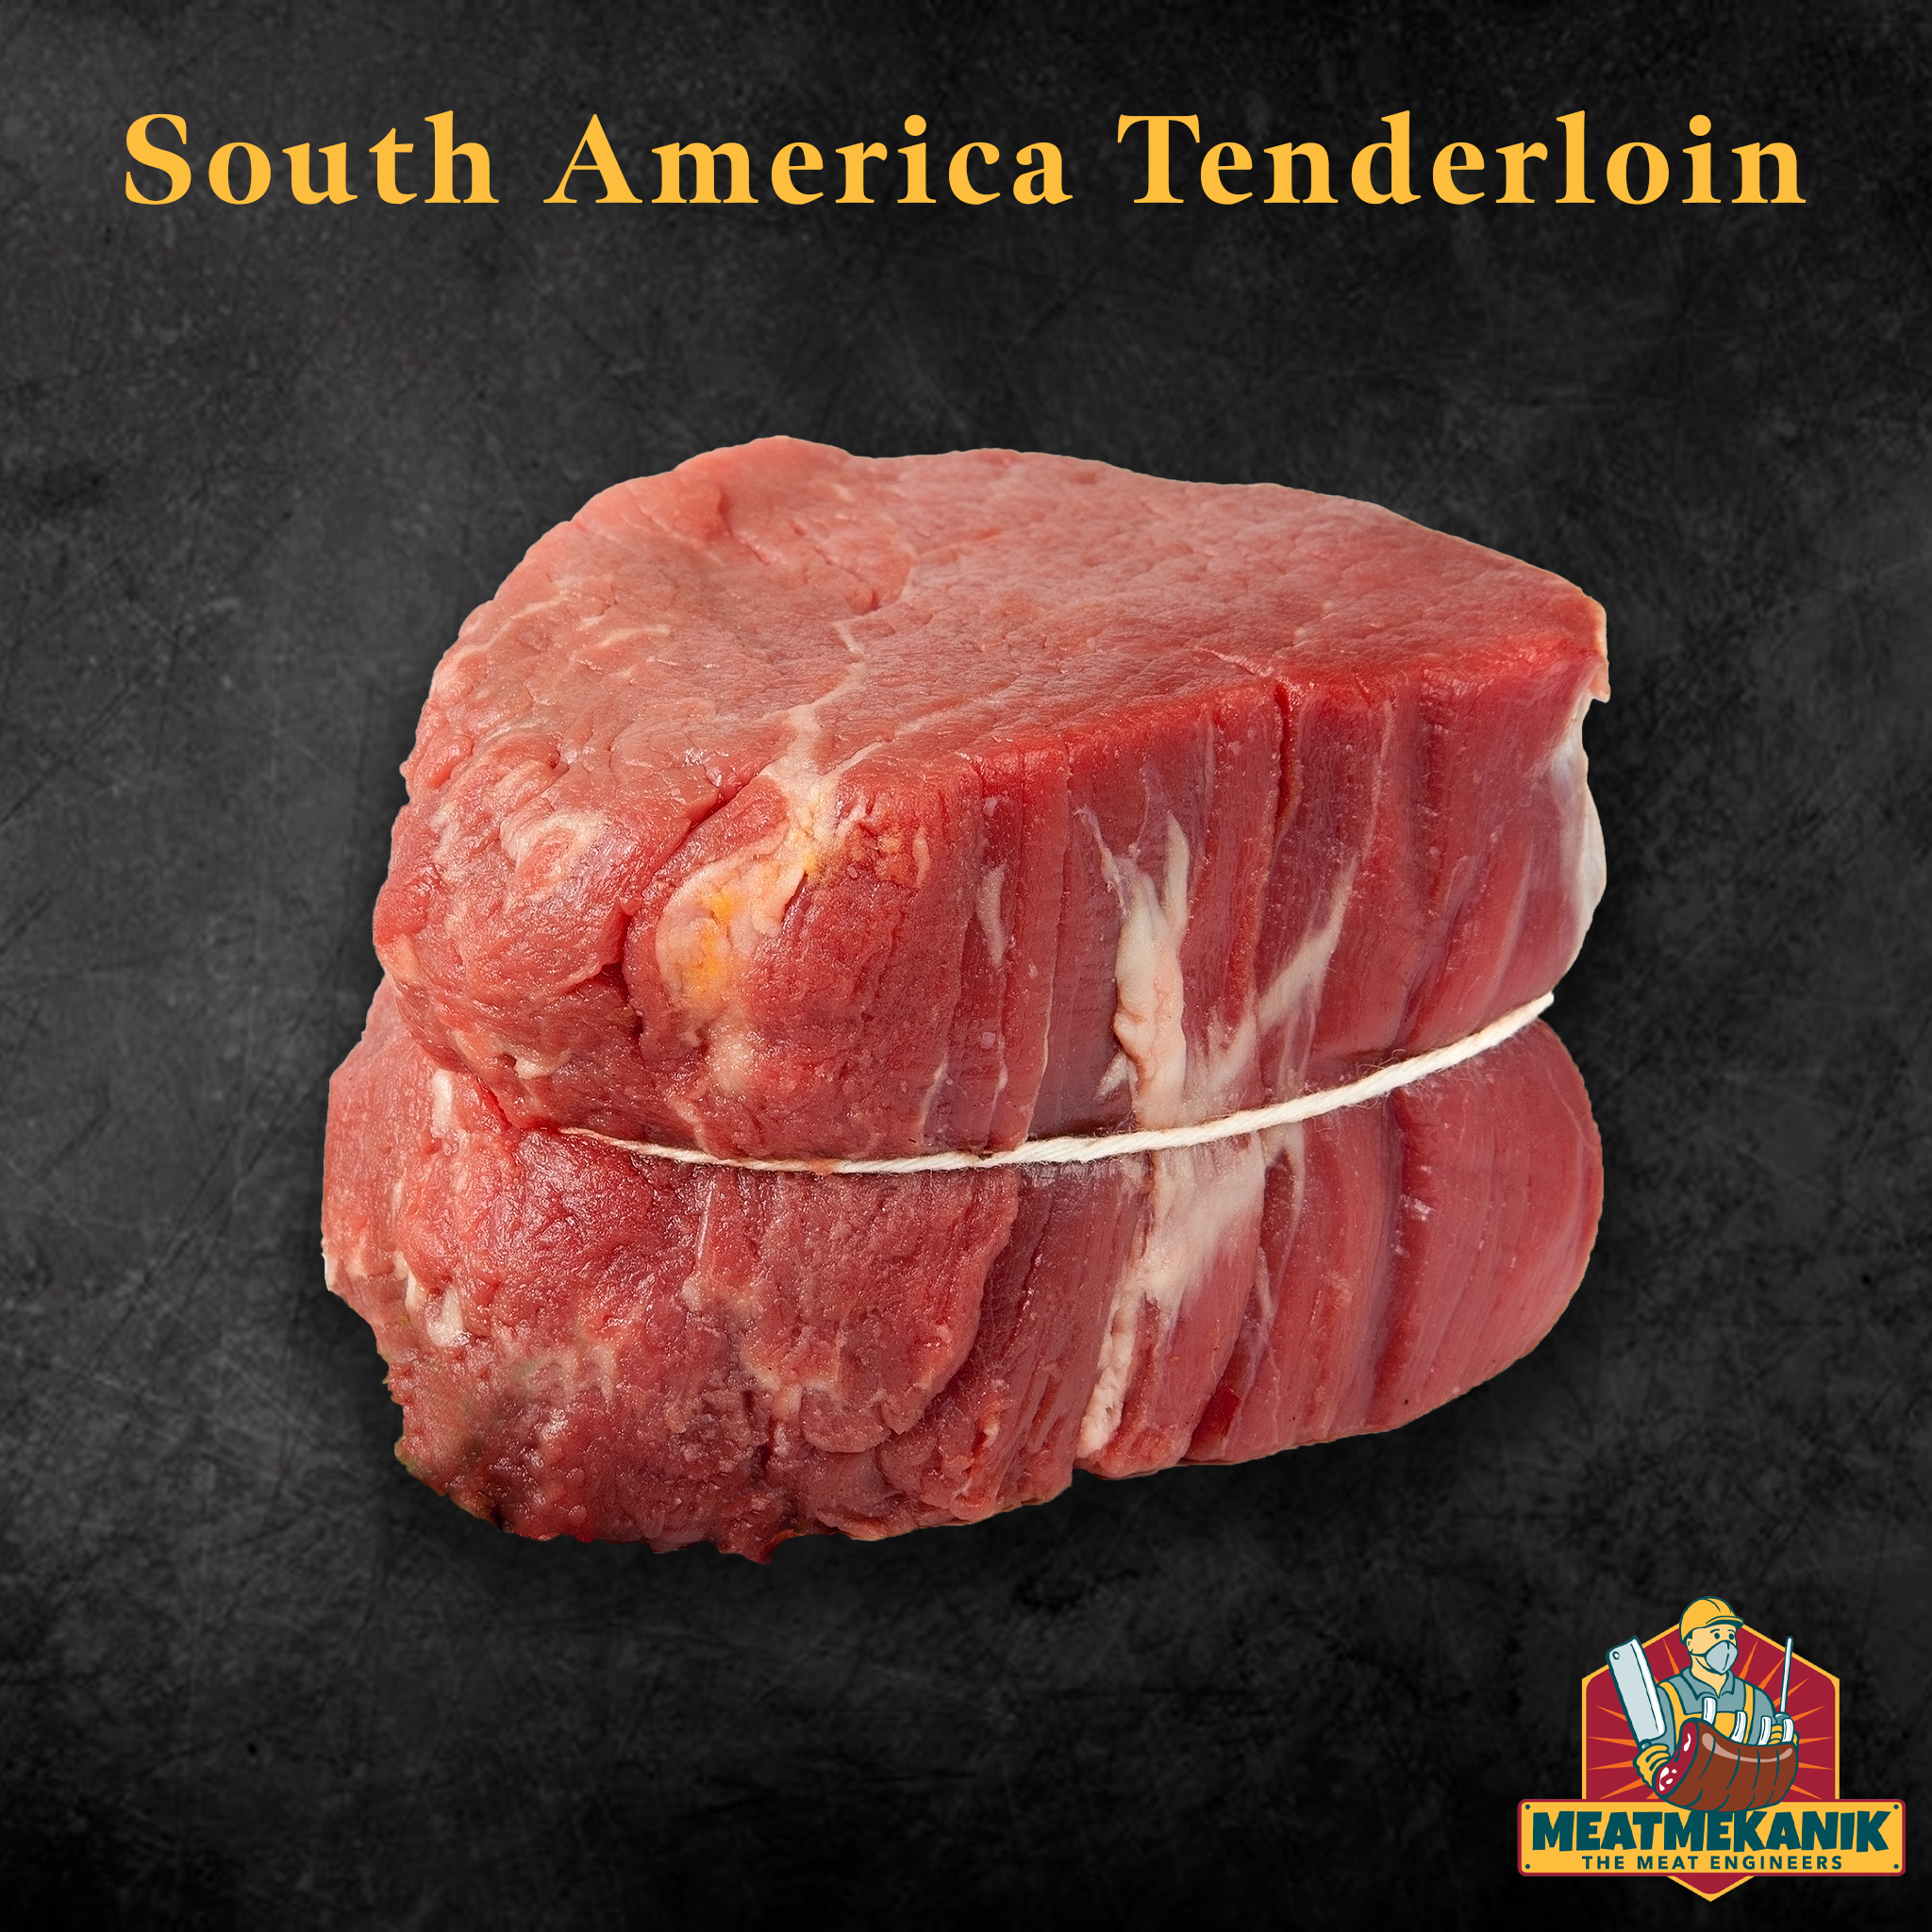 South America Tenderloin - Meat Mekanik